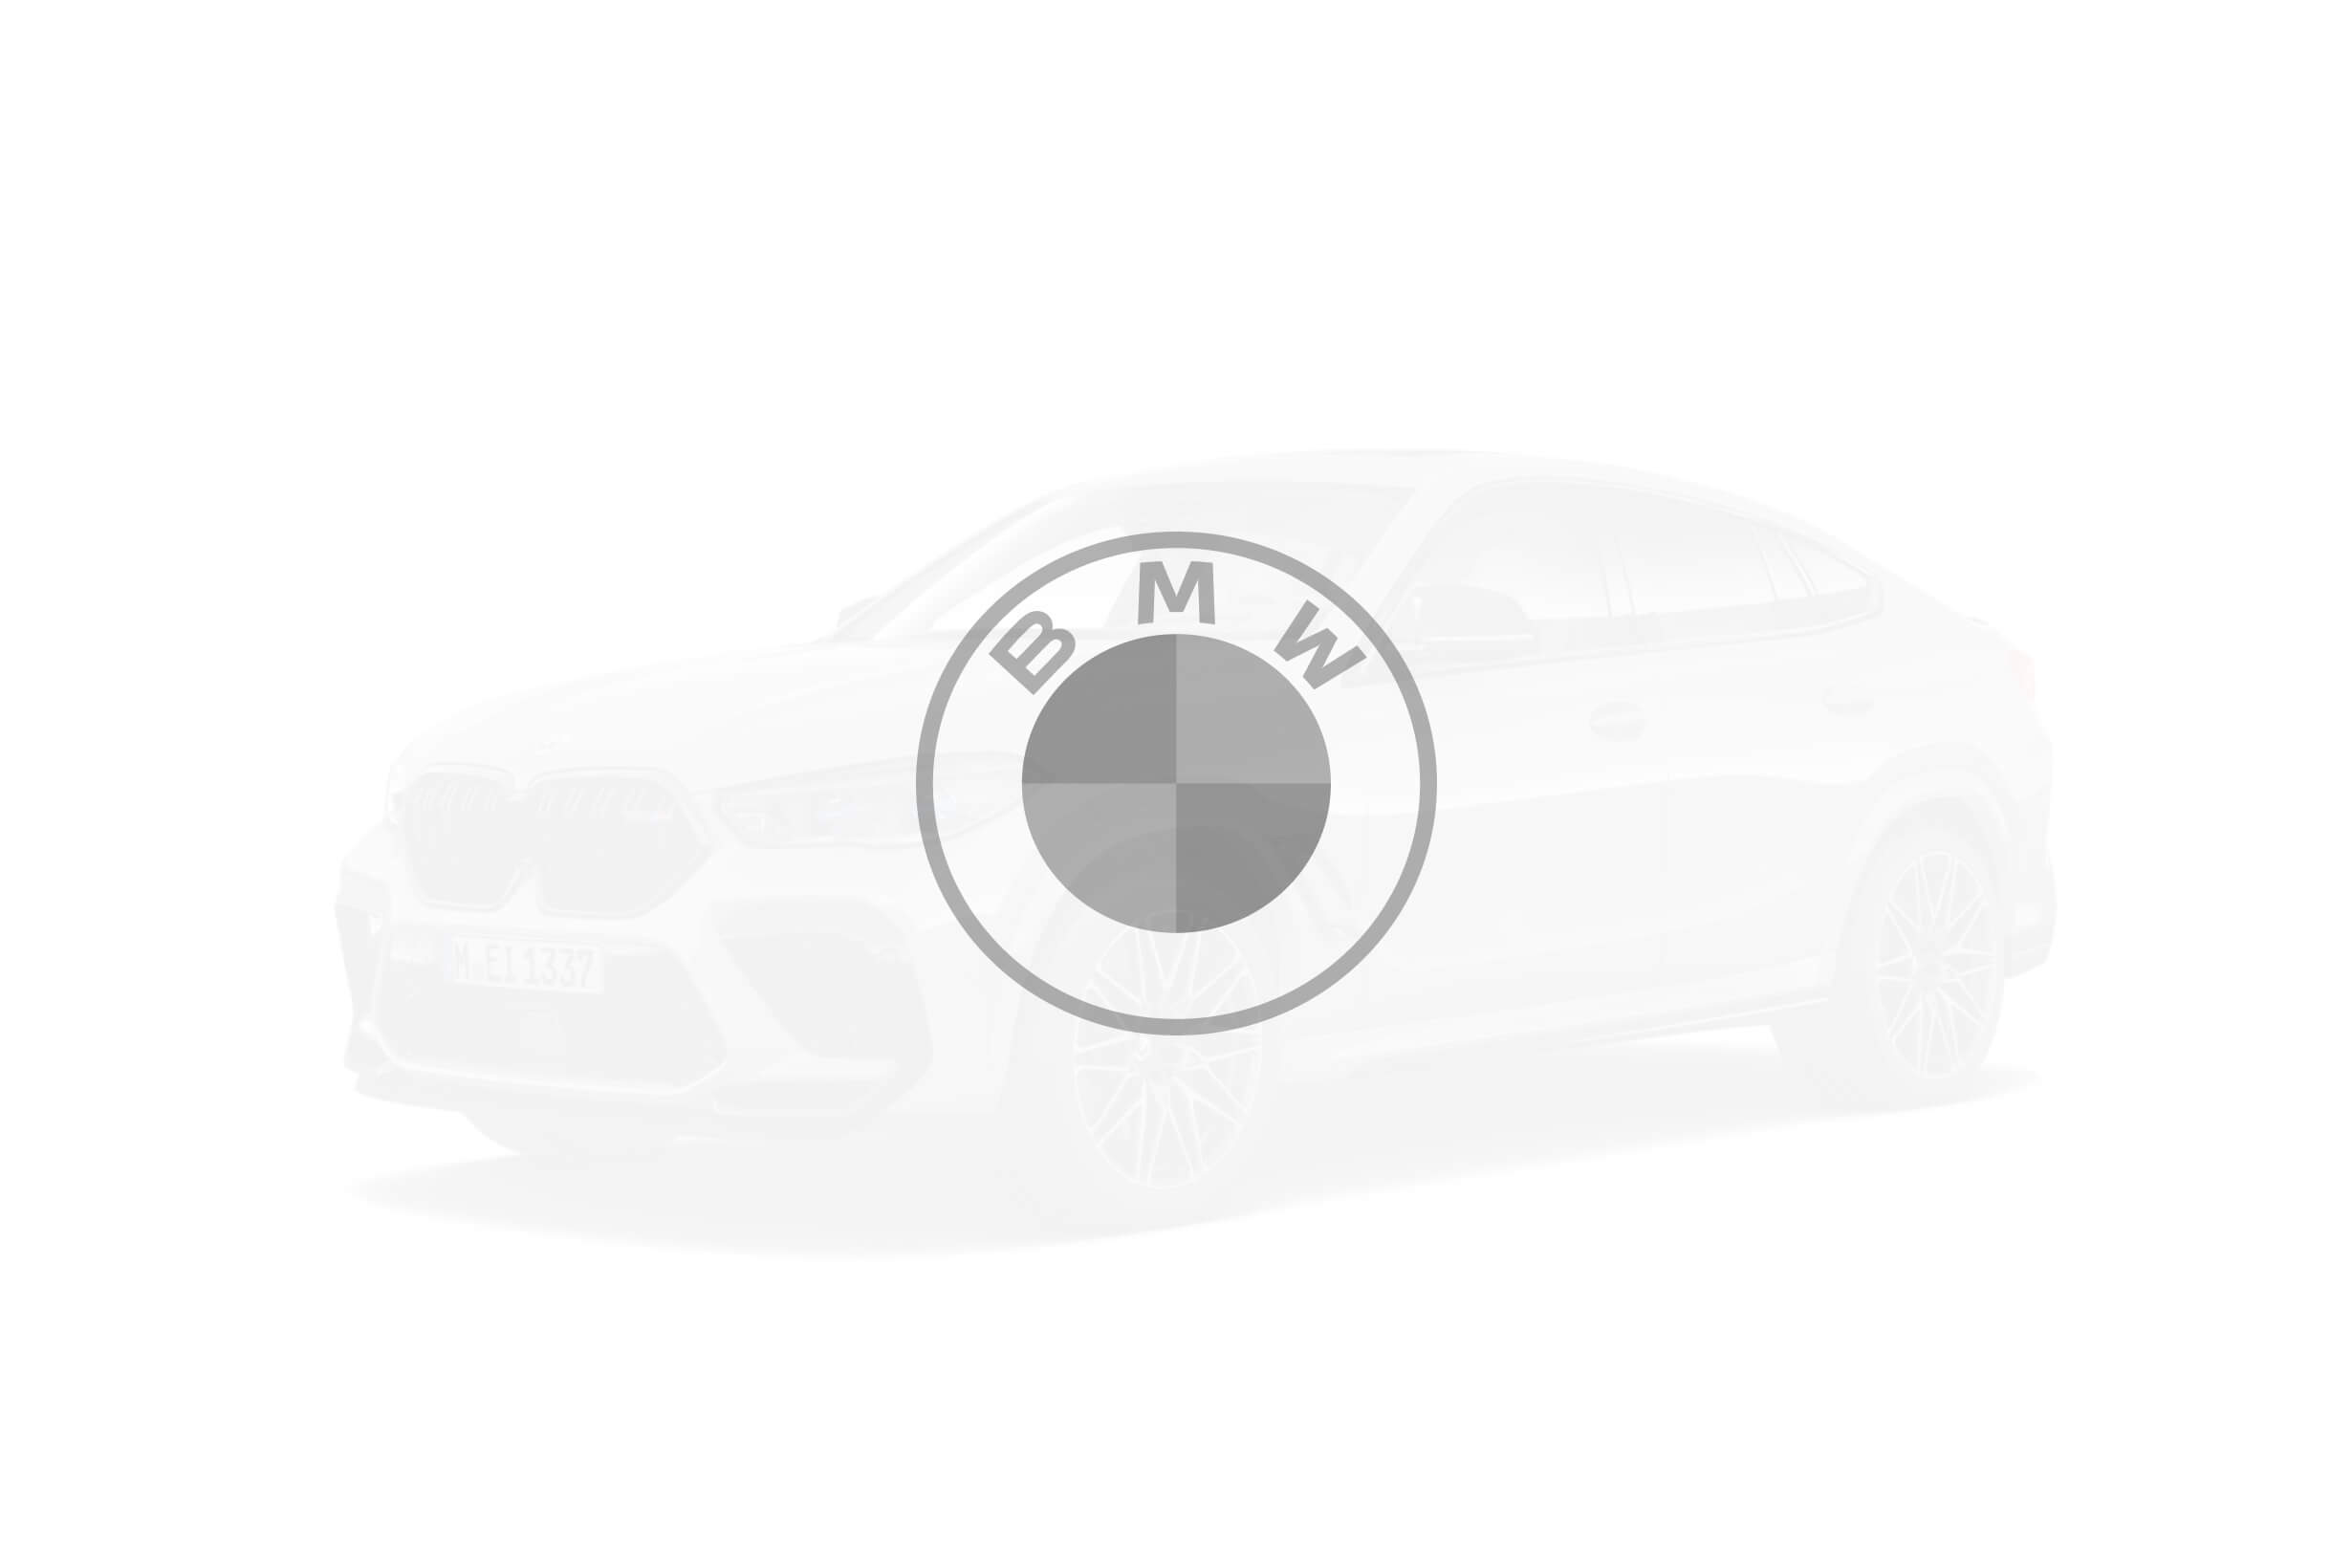 BMW 750d xDrive